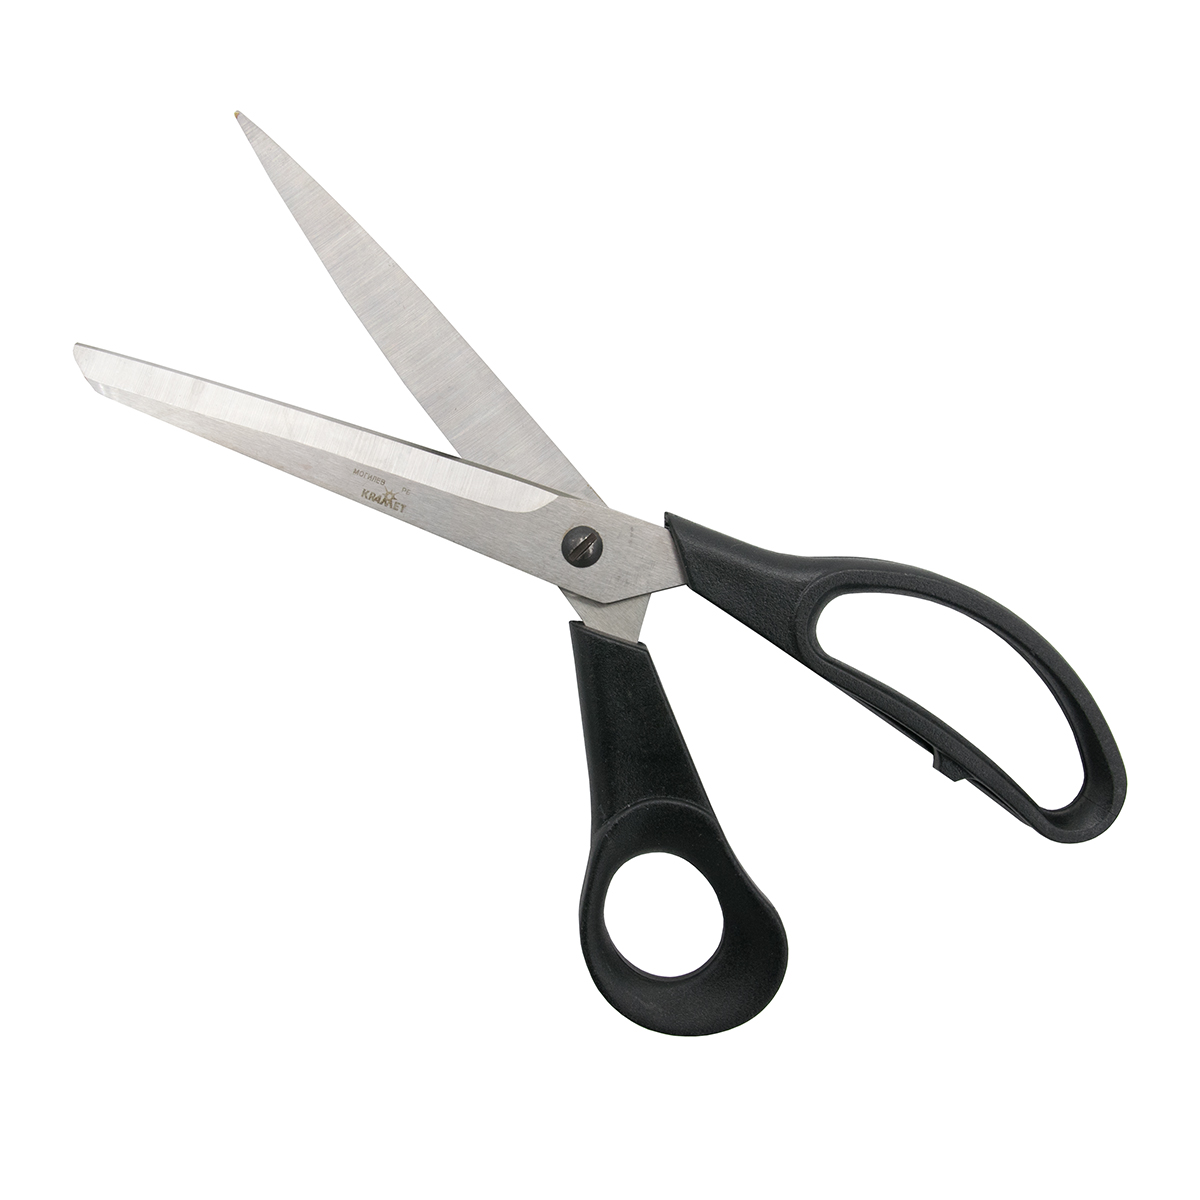 Ножницы закройные KARMET из нержавеющей стали с пластиковыми ручками и винтом для регулировки хода 25 см - фото 3